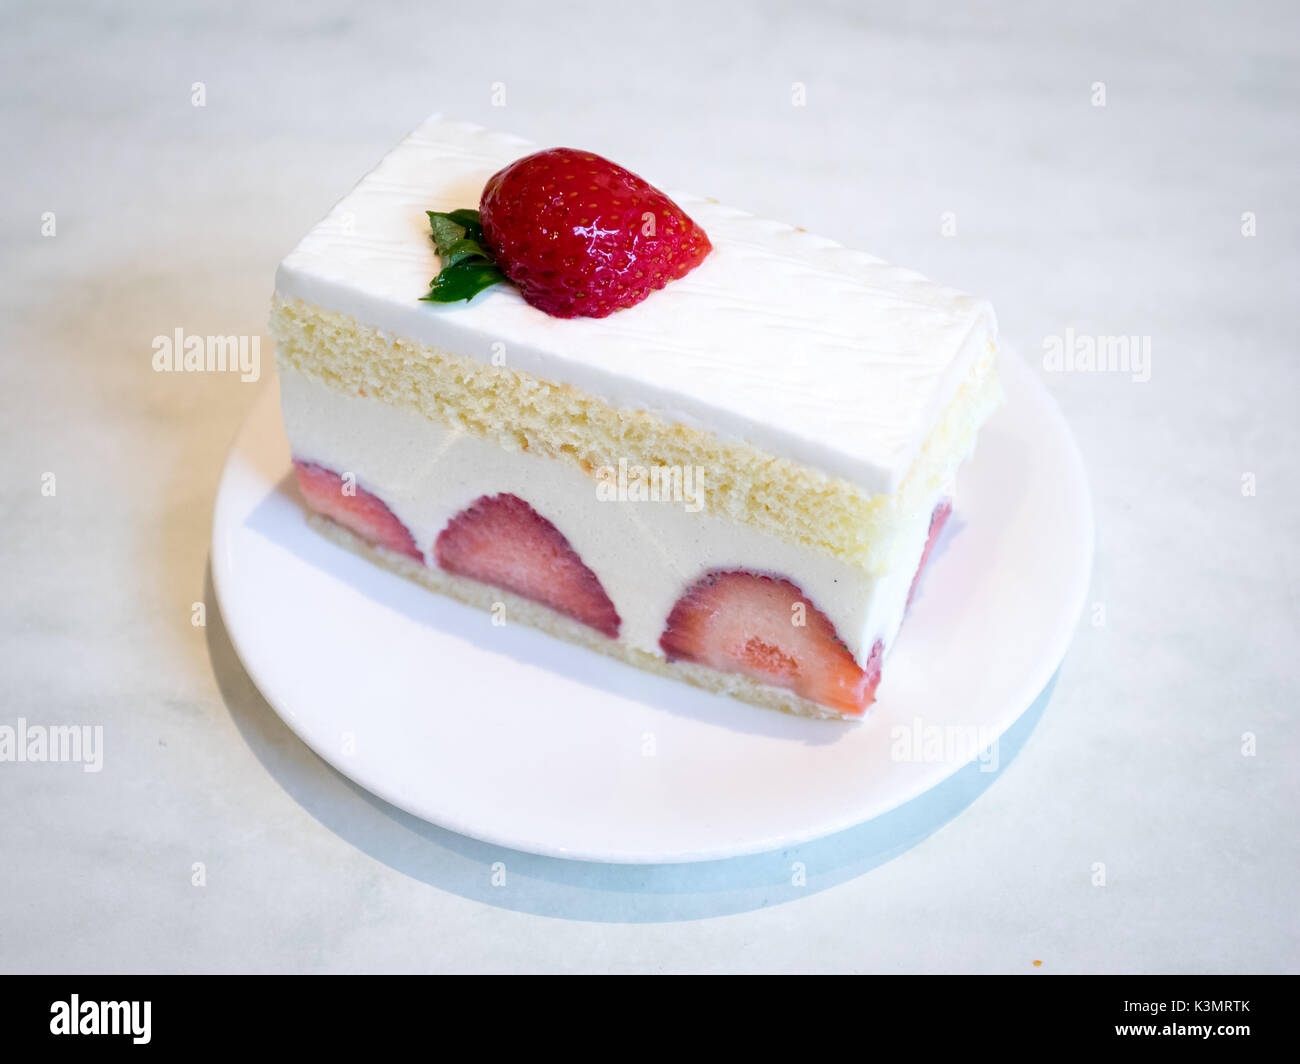 Eine Scheibe von delicious Strawberry Shortcake, ein beliebter Nachtisch. Stockfoto